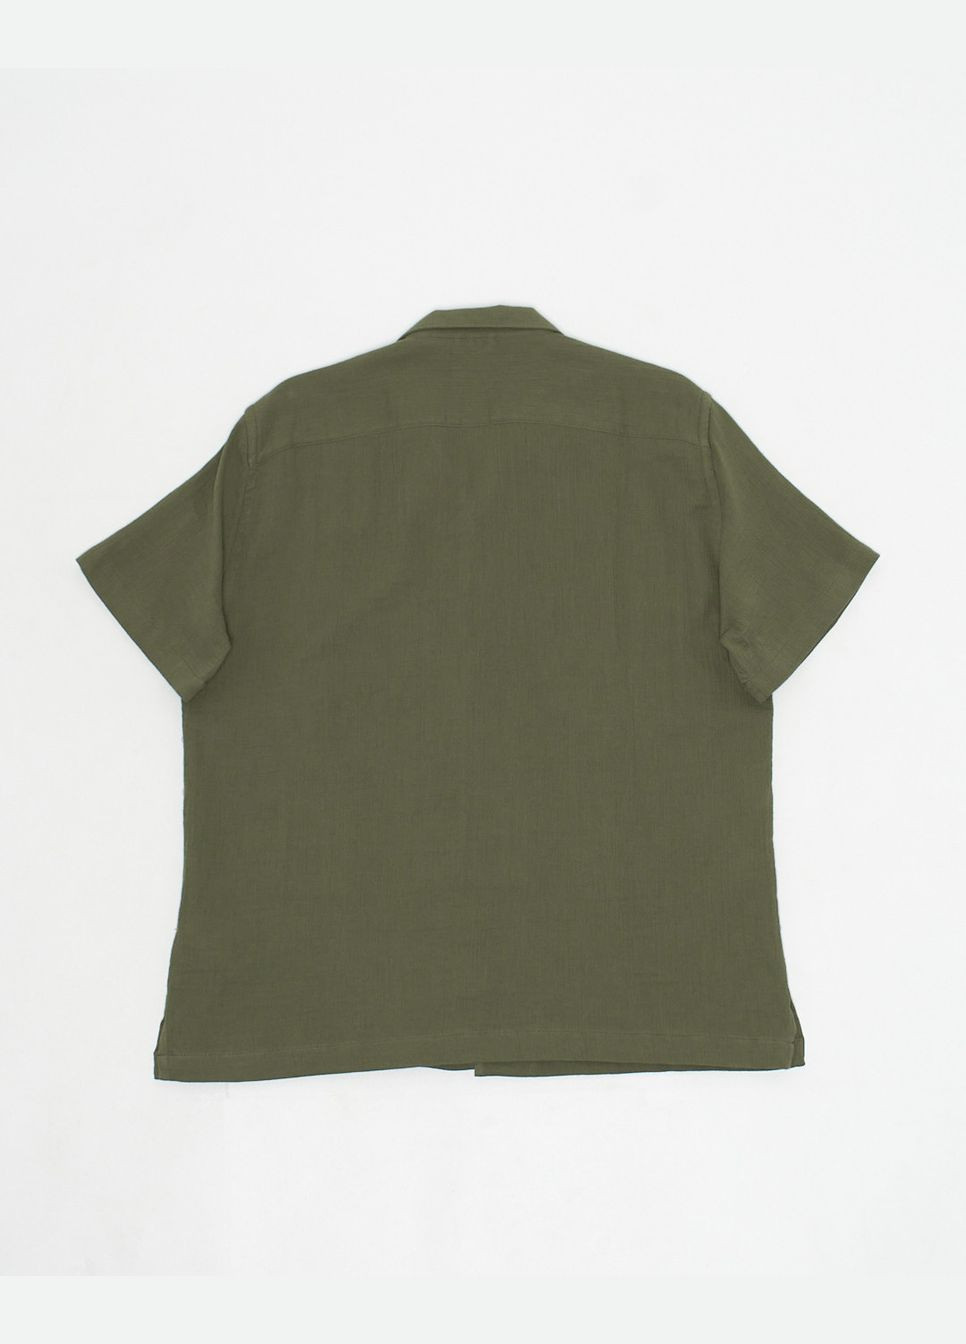 Темно-зеленая рубашка Celio